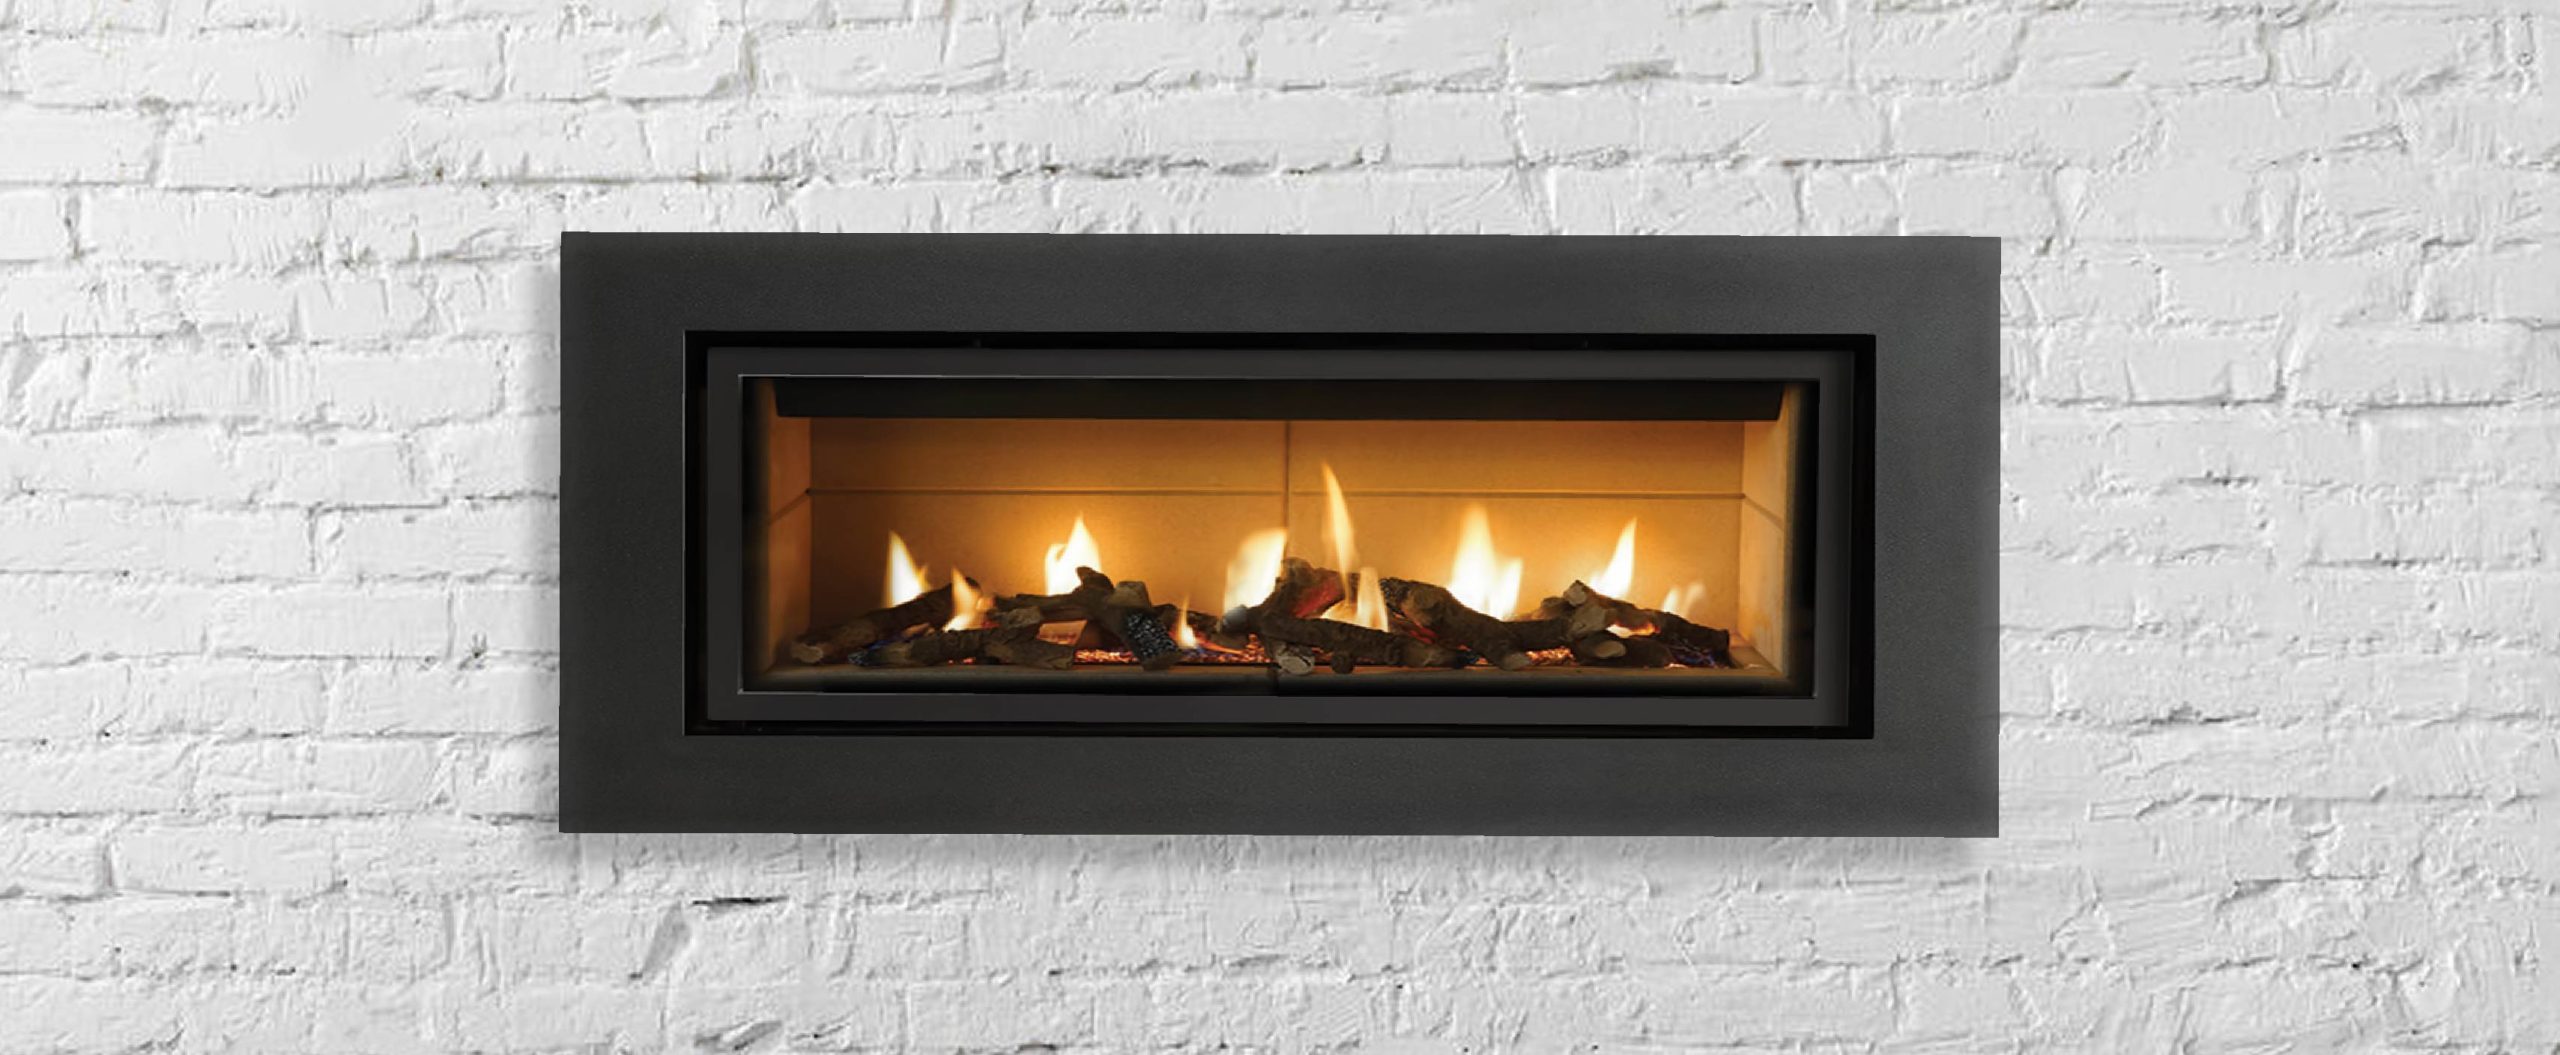 closeup of gas fireplace